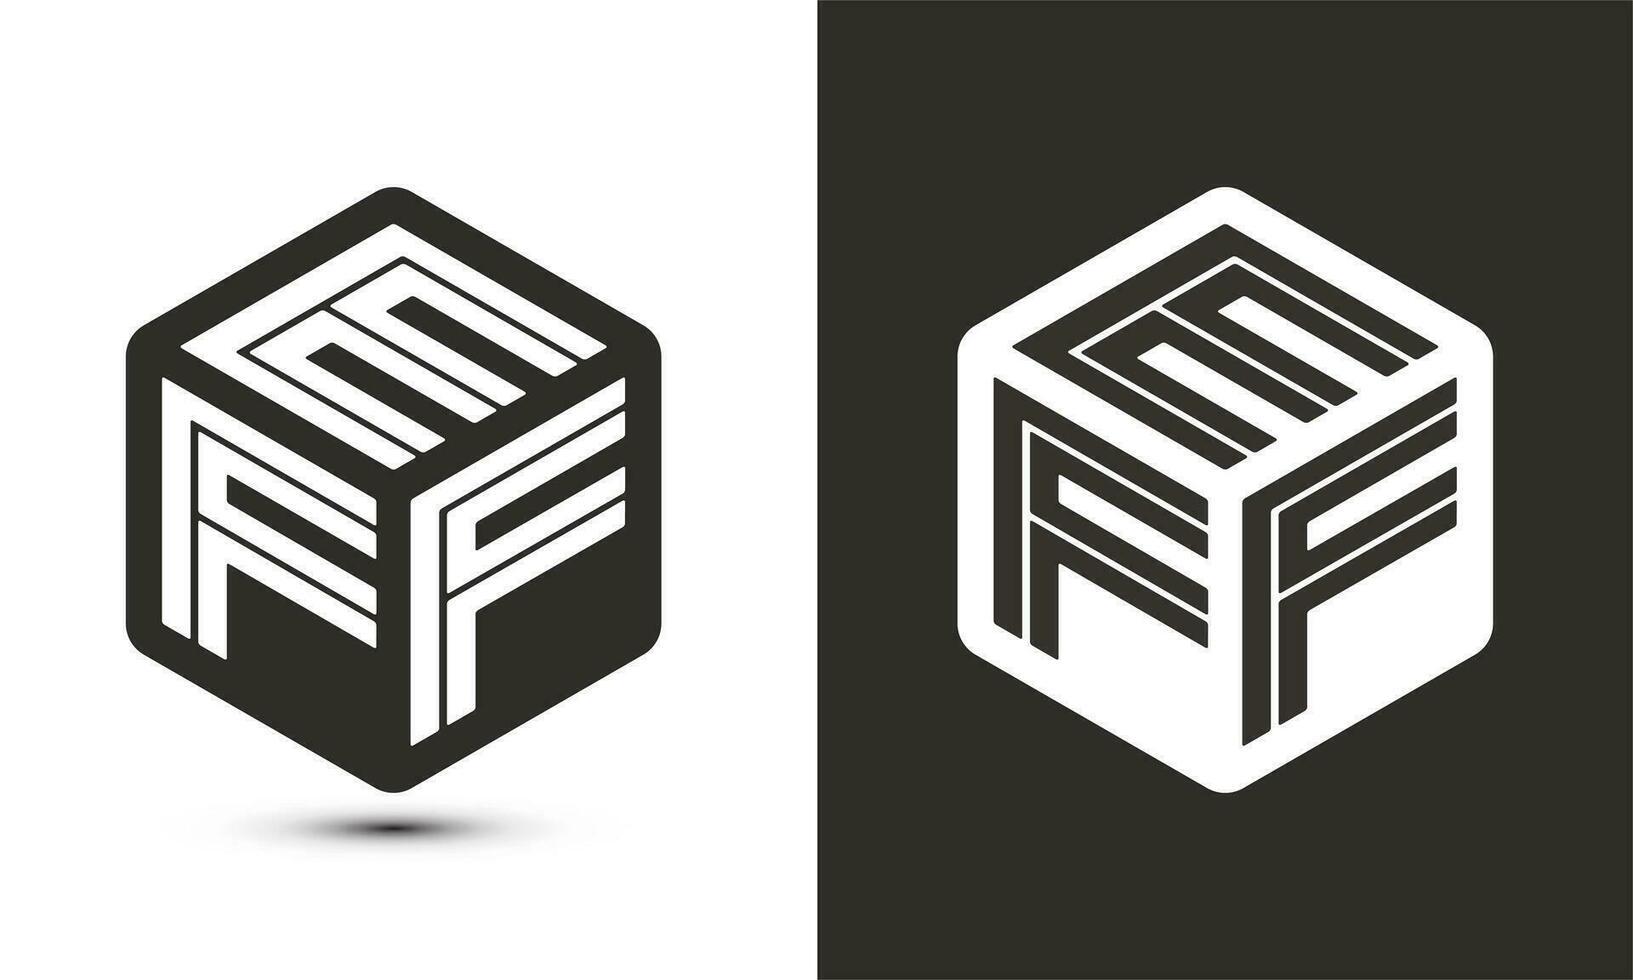 eff brief logo ontwerp met illustrator kubus logo, vector logo modern alfabet doopvont overlappen stijl.